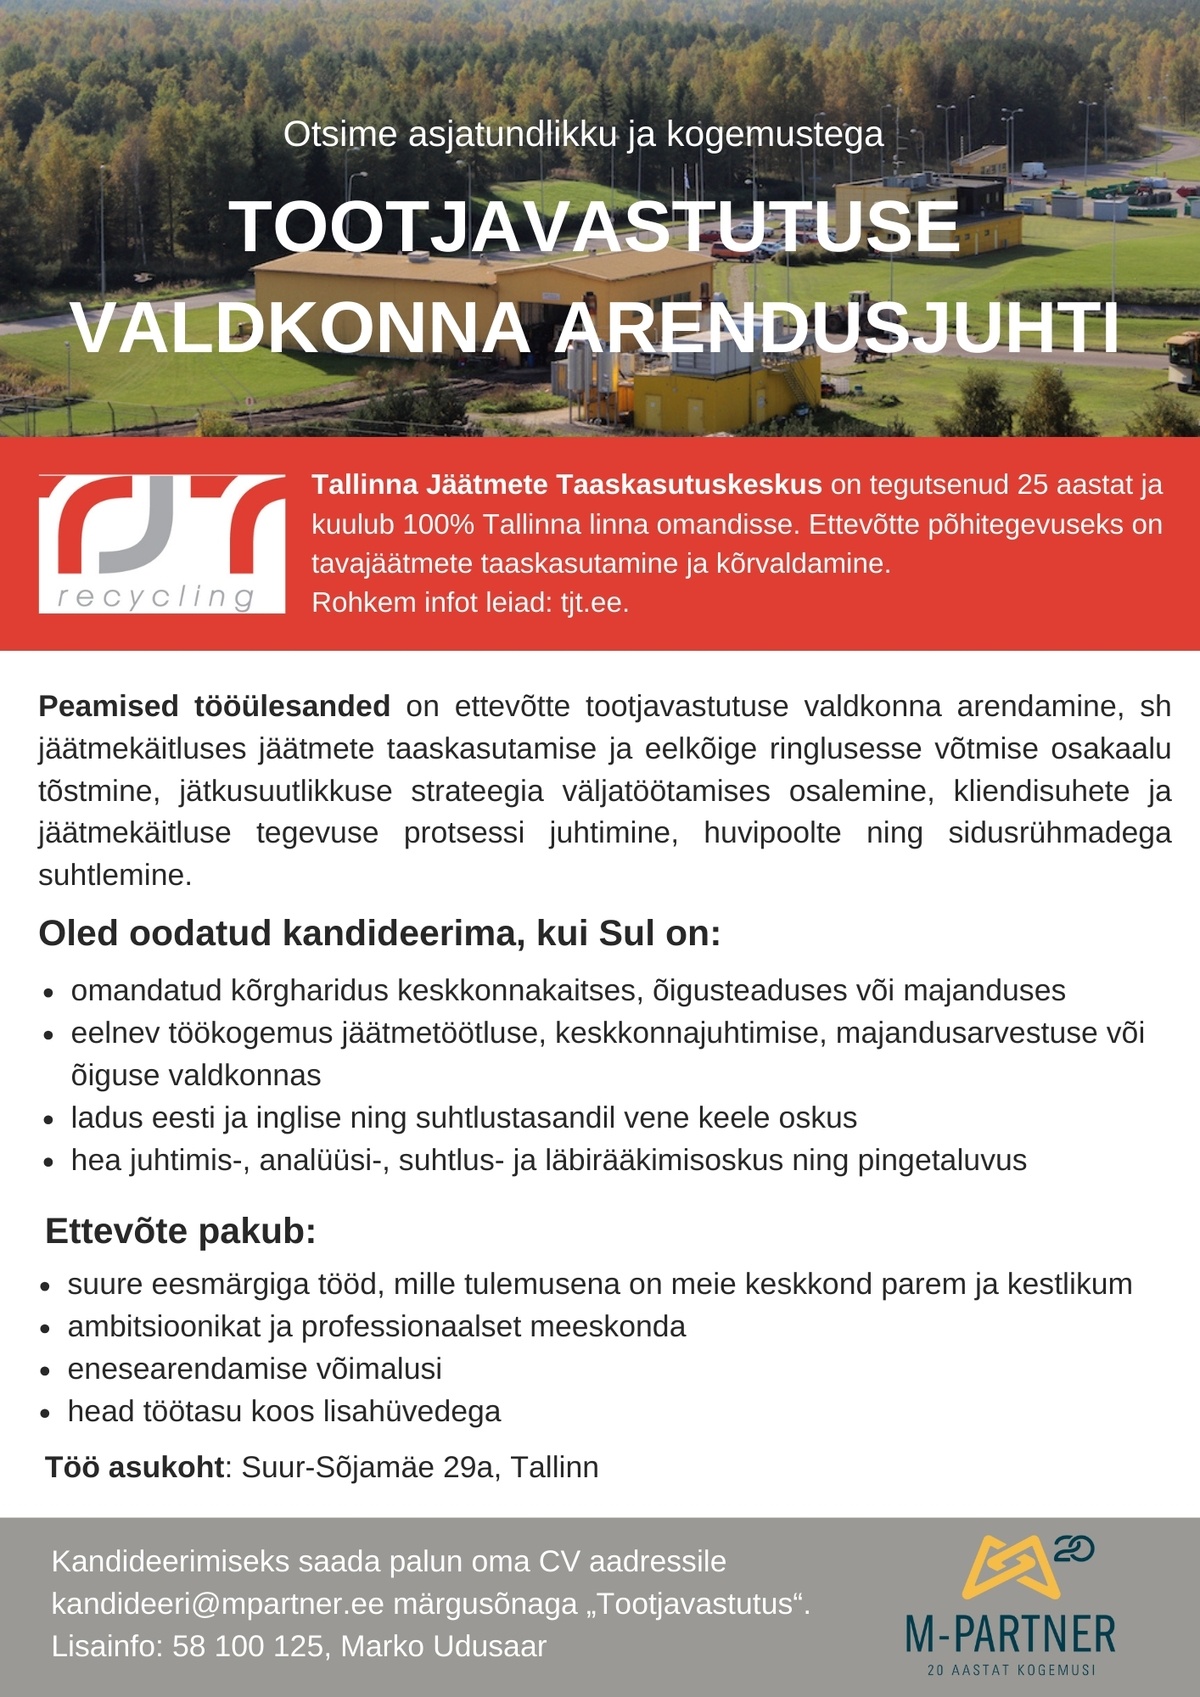 Tallinna Jäätmete Taaskasutuskeskus Tootjavastutuse valdkonna arendusjuht